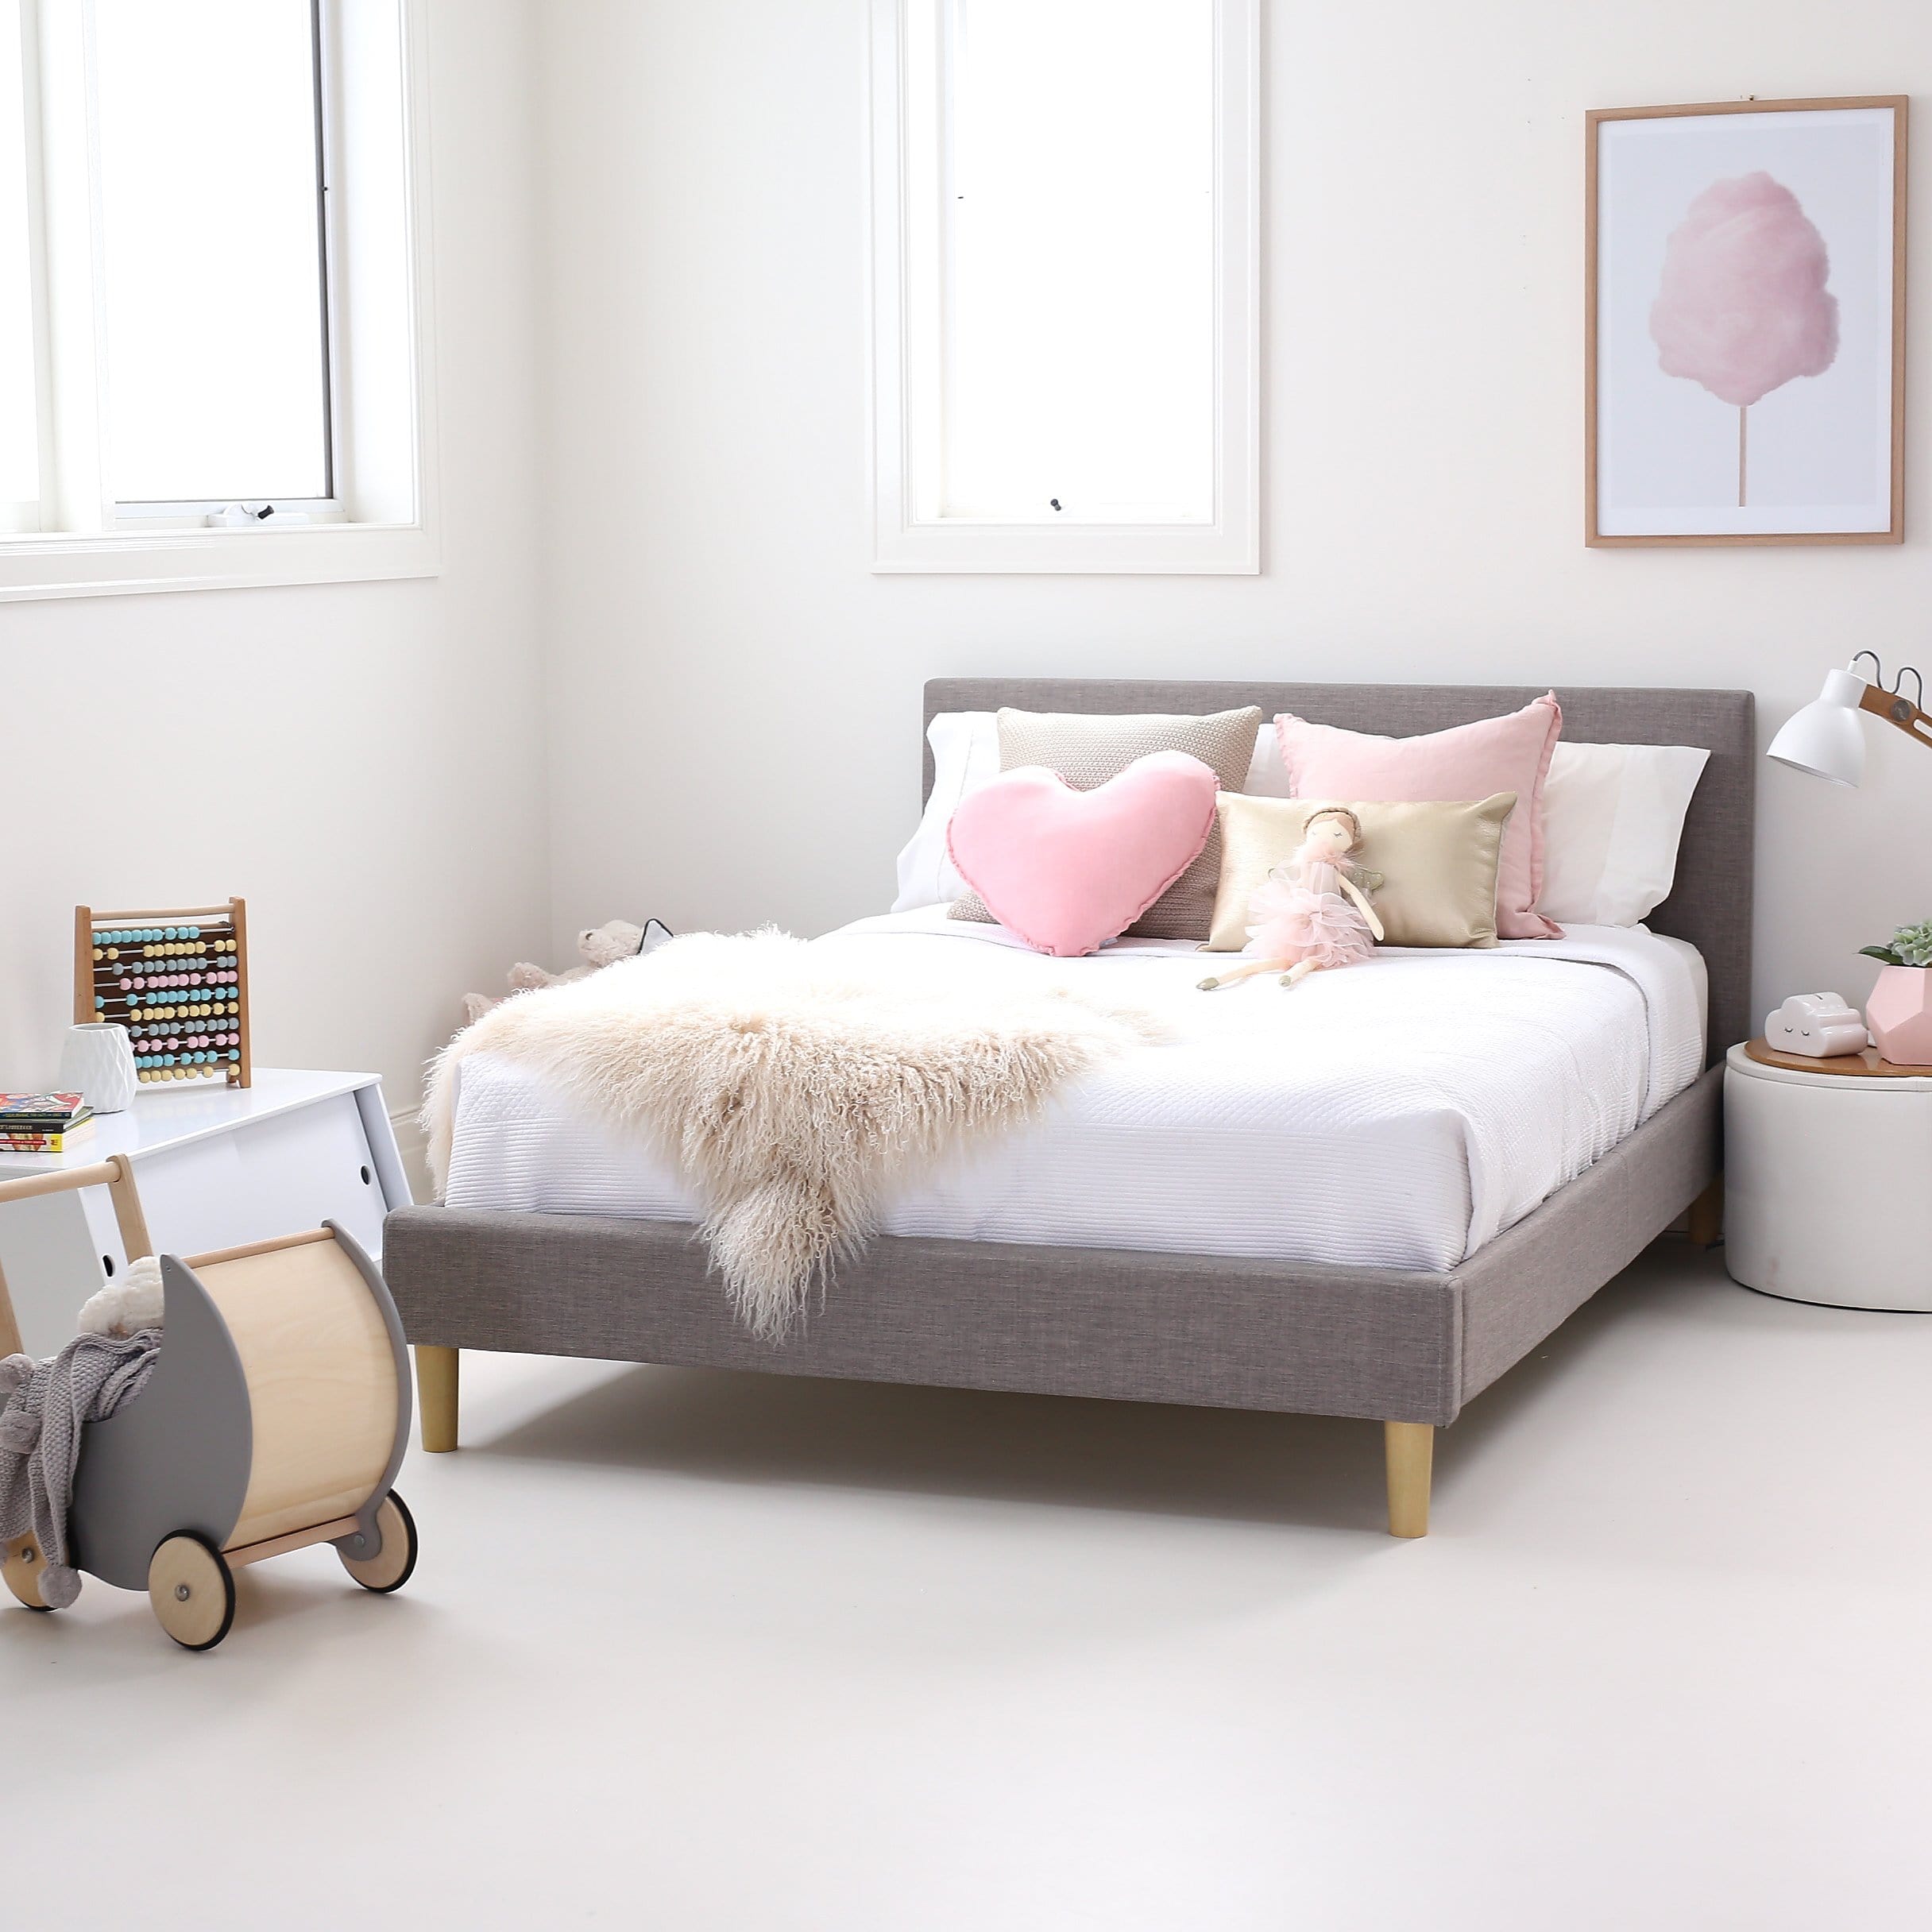 Kids Bedroom Furniture That Promotes Big Imagination Potential